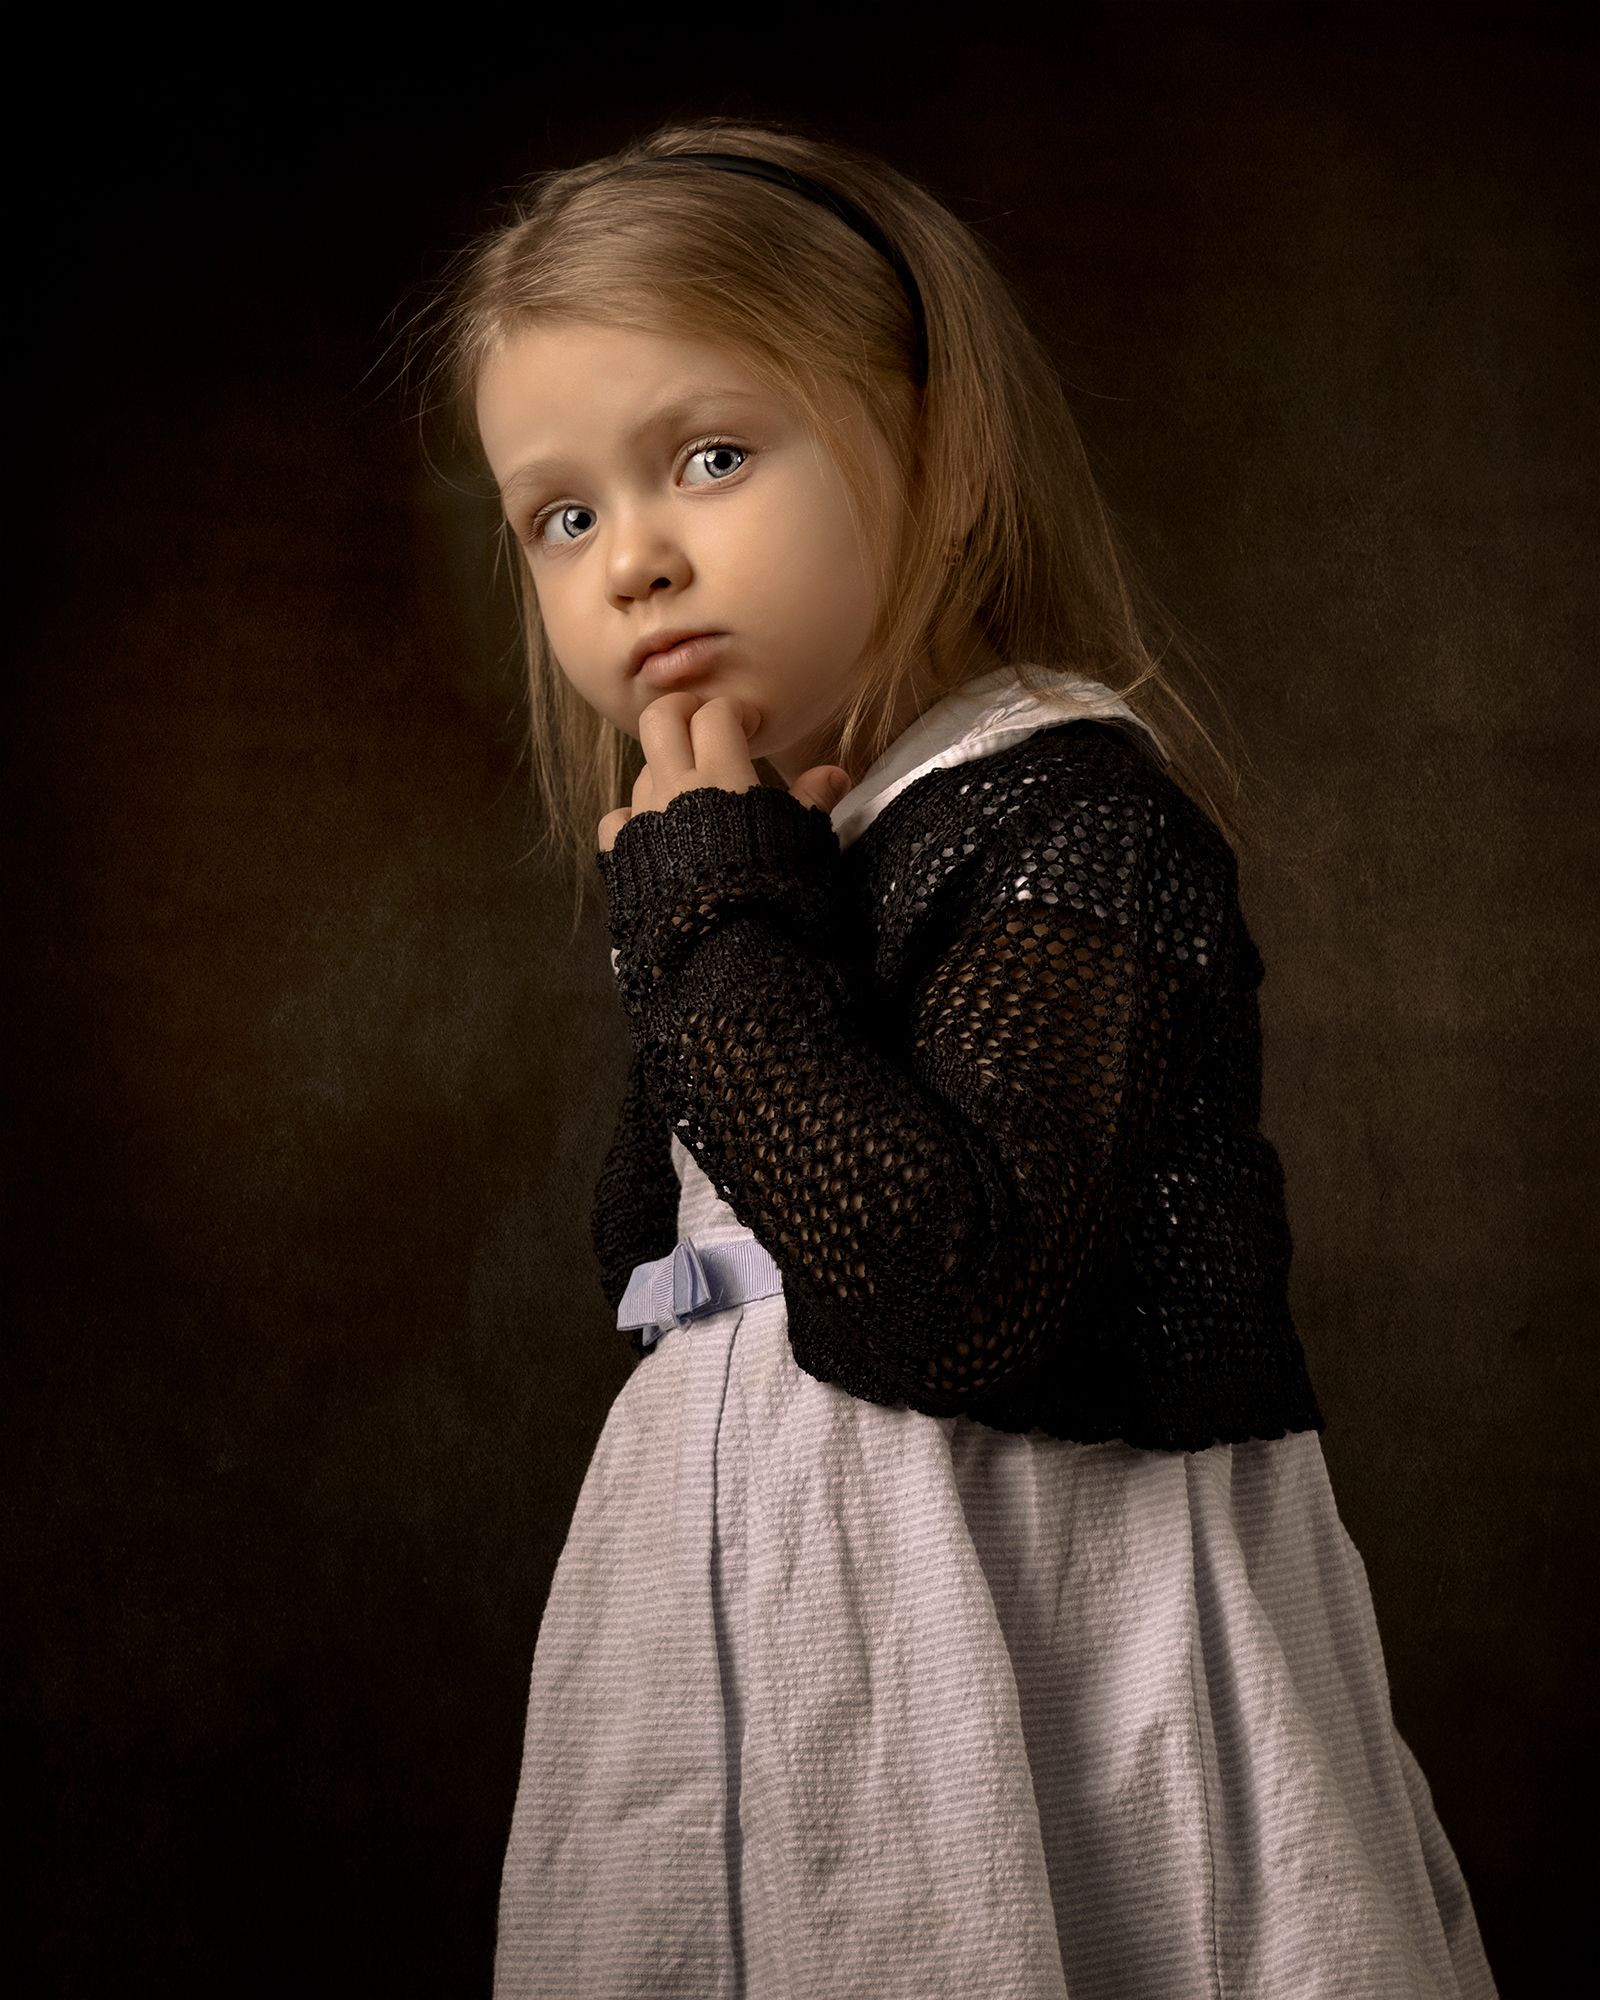 детский портрет, 2portraits, Aleksandr Shvedov